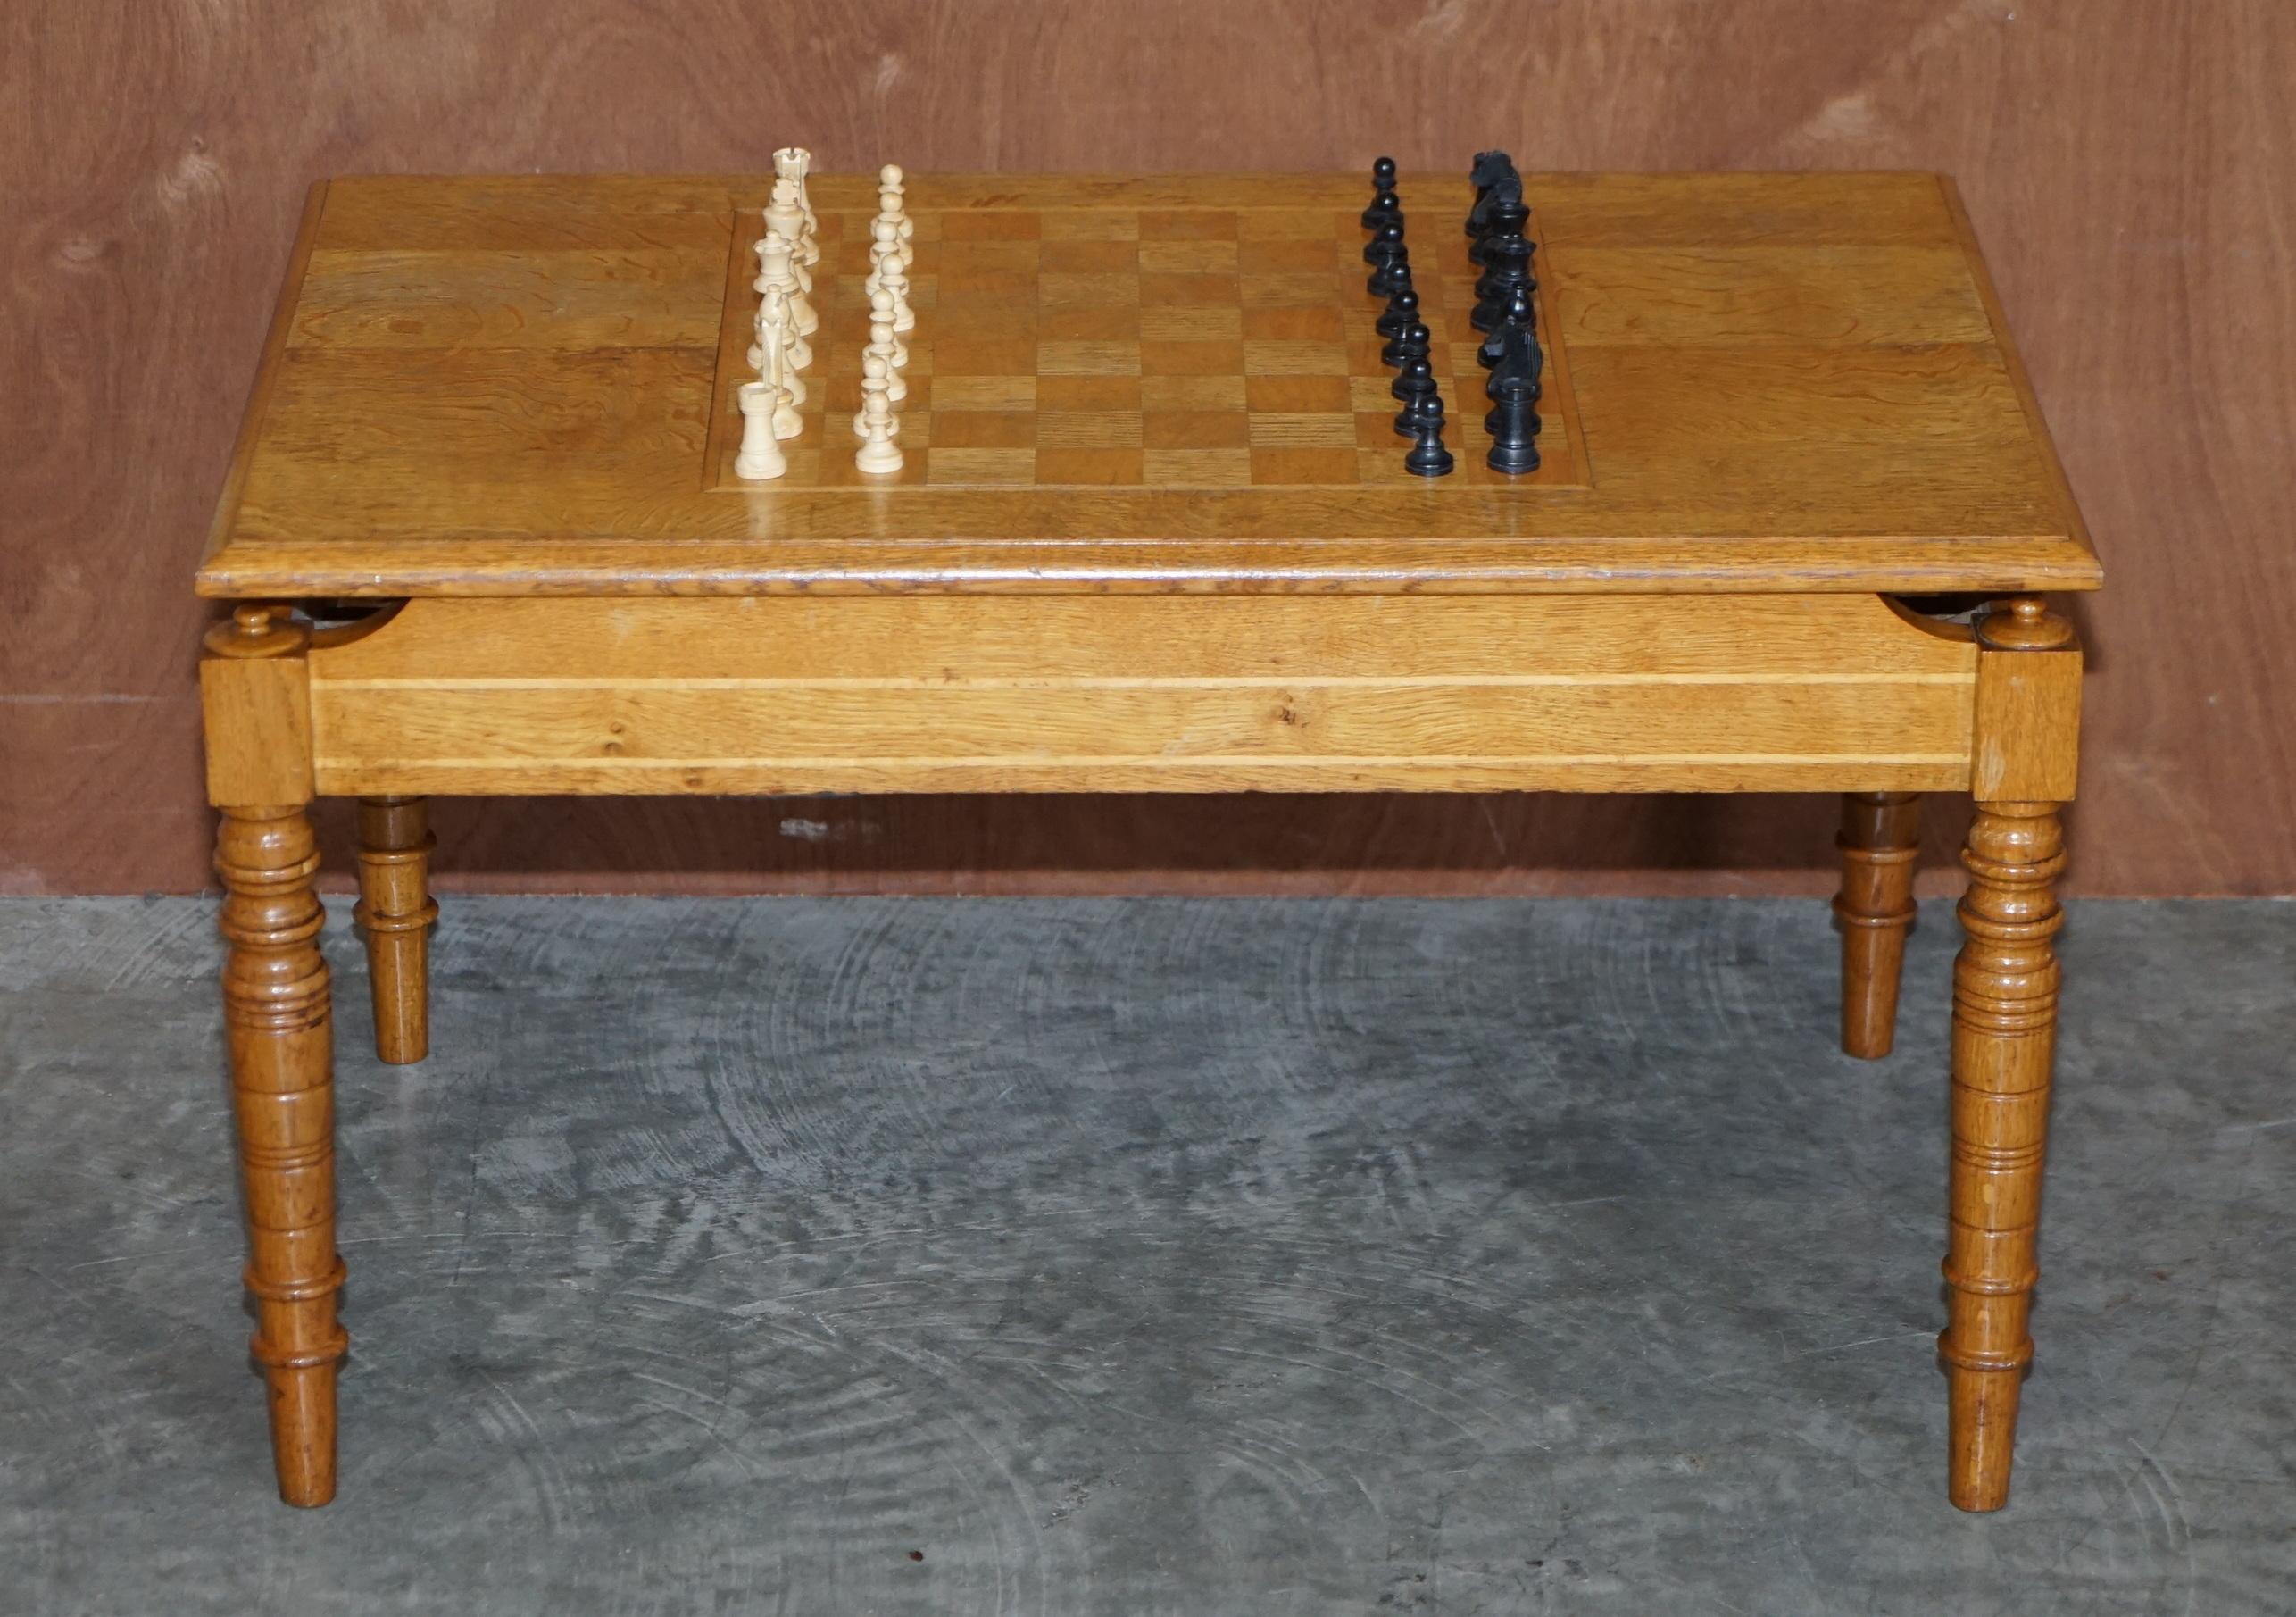 Wir freuen uns, diesen schönen englischen Eichenholz-Couchtisch mit ebonisiertem Schachspiel aus der Zeit zum Verkauf anbieten zu können.

Ein gut aussehendes und gut gemachtes Stück, es kann natürlich auch als normaler Couchtisch verwendet